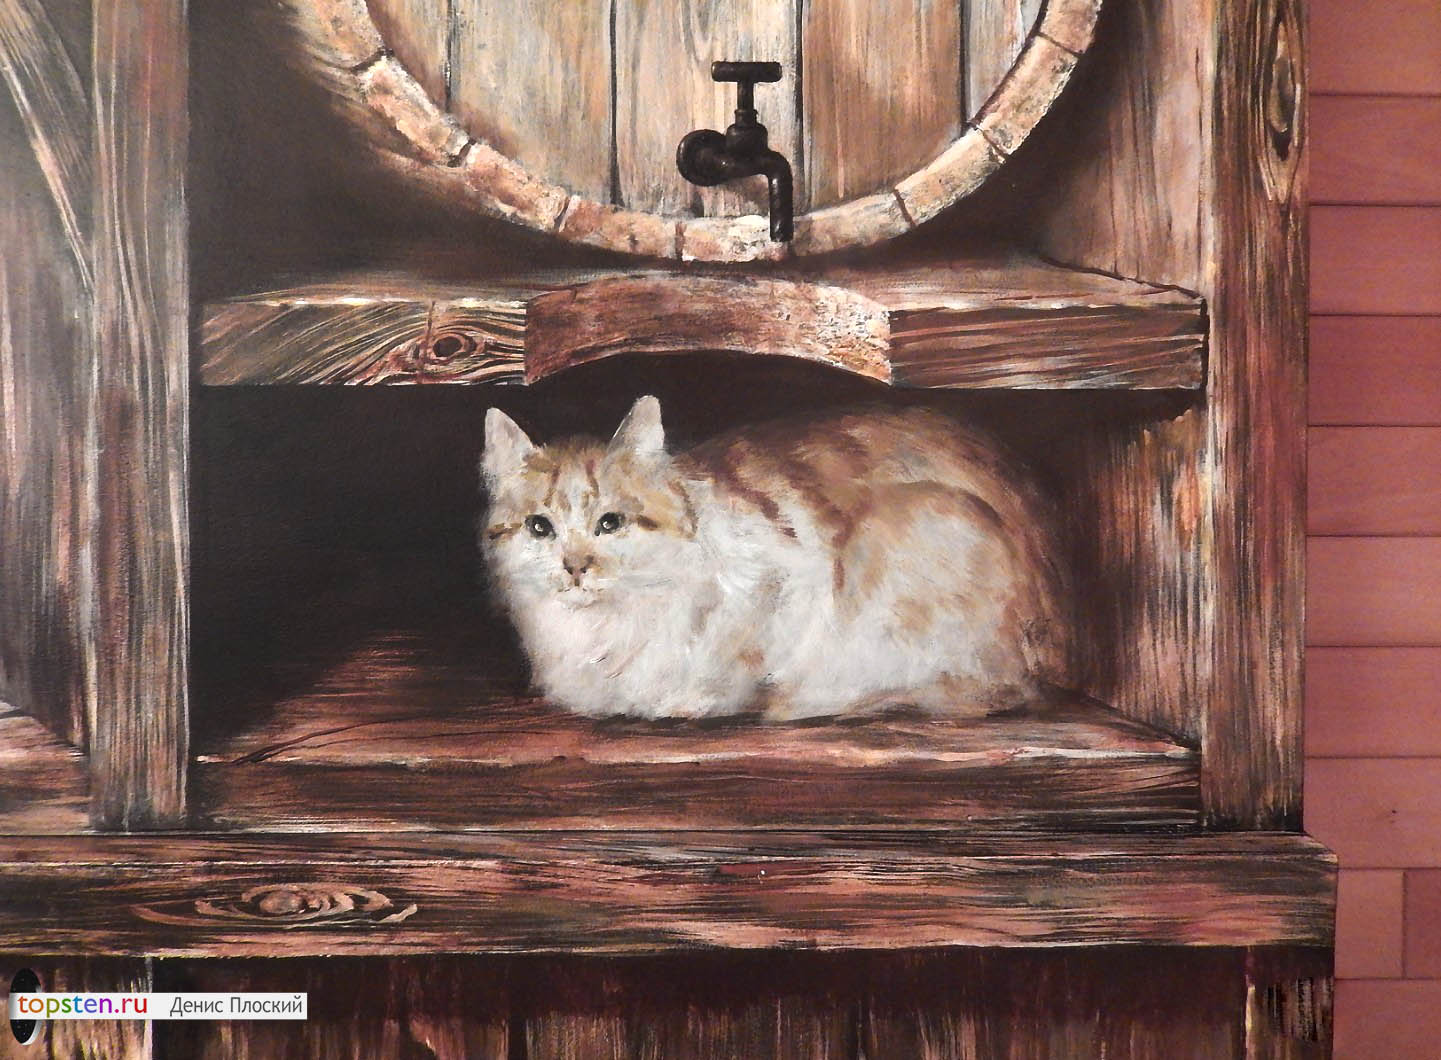 Кошка спряталась под деревянной бочкой. В каждом фрагменте росписи ярко выражен деревенский стиль.